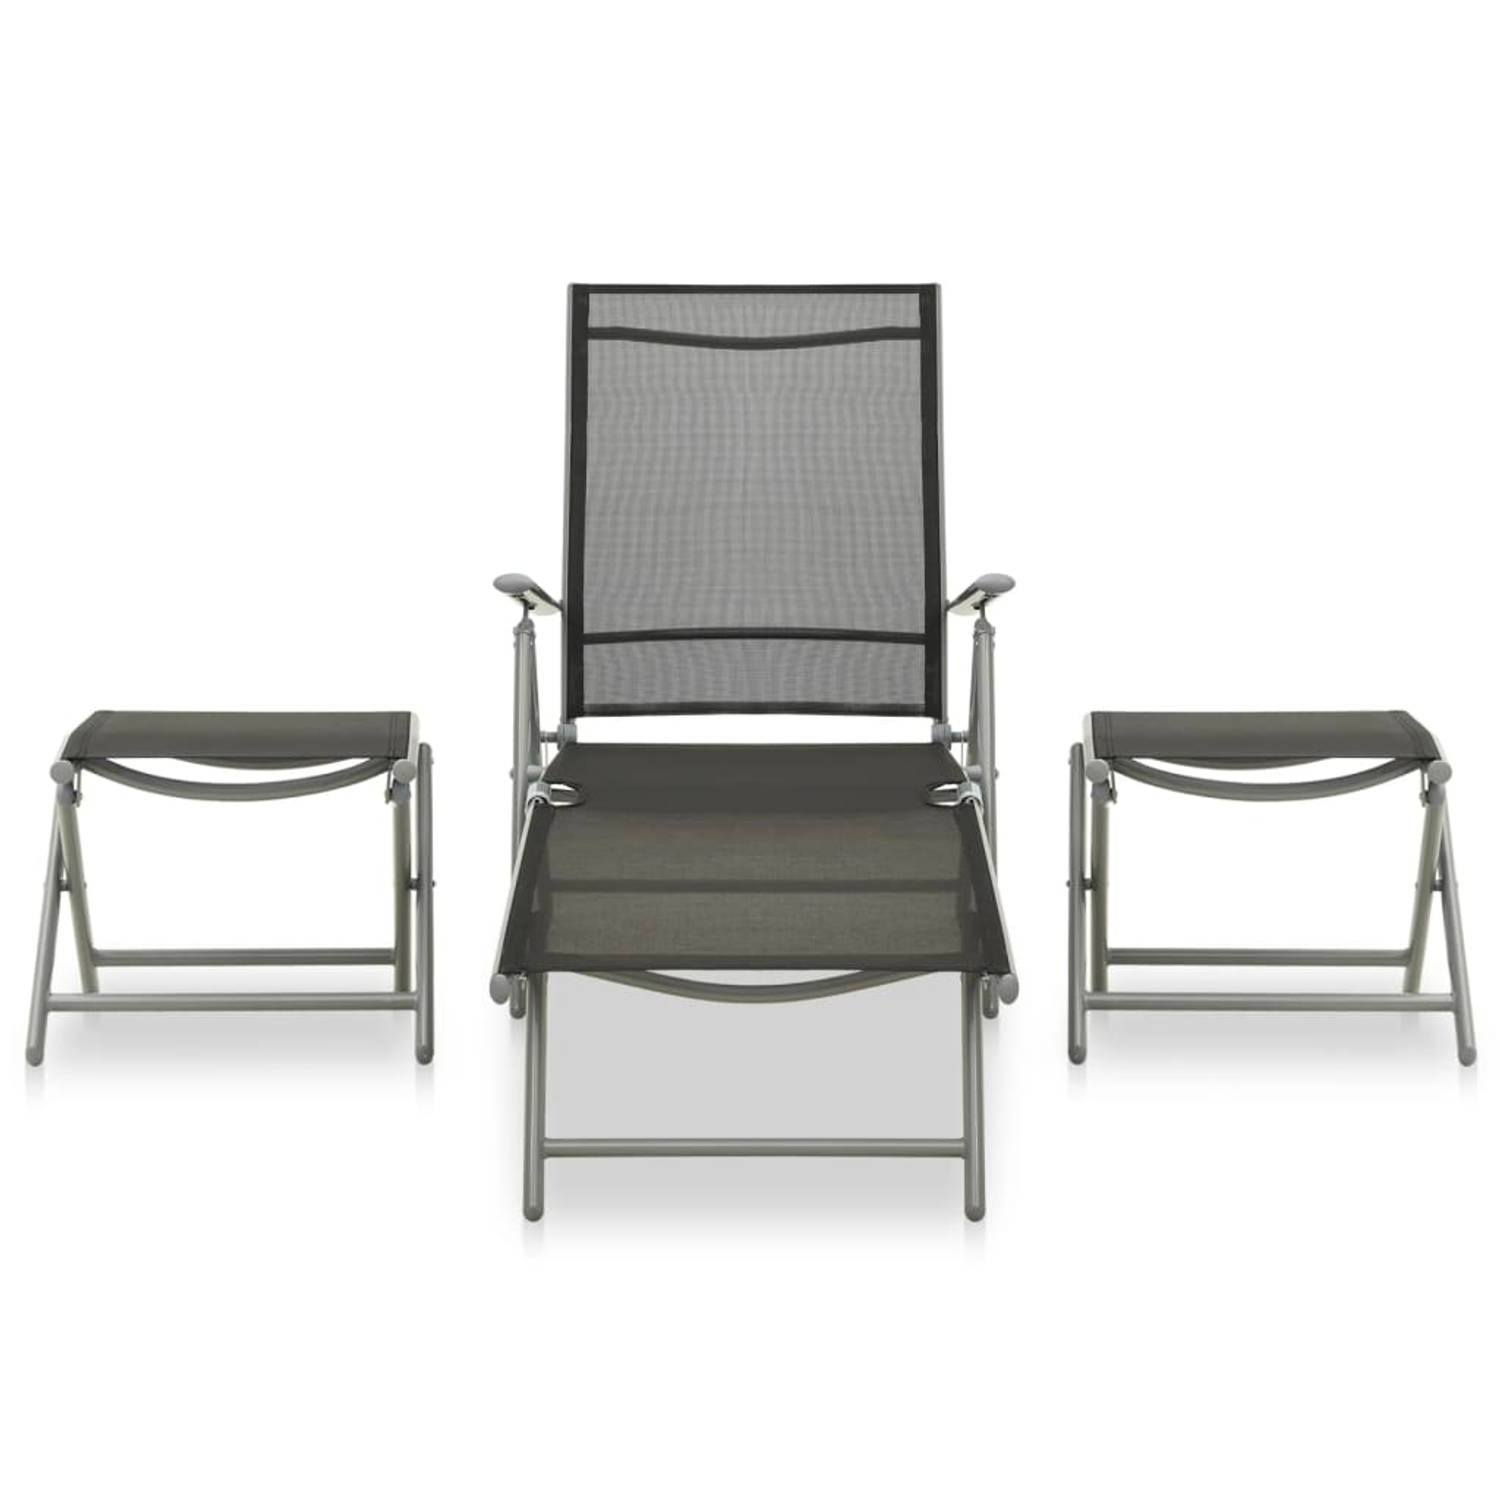 The Living Store Tuinstoel Aluminium/Zwart/Zilver 178x61.5x60cm - Verstelbare rugleuning - comfortabele textileen zitting - Inklapbaar design - Set van 1 stoel - 2 voetensteunen